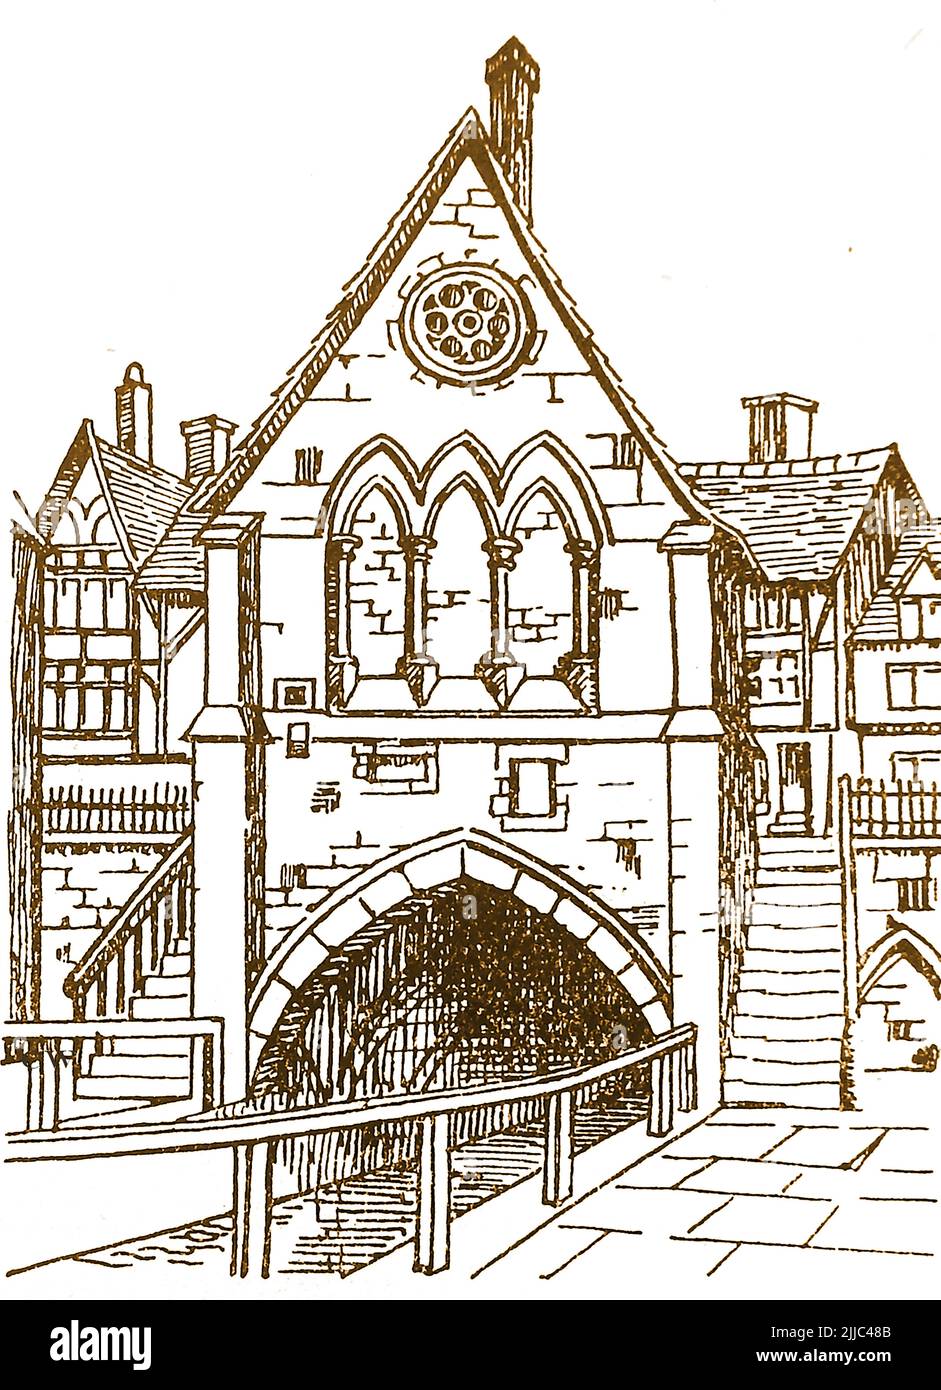 Historia de Lincoln, Inglaterra - Un viejo boceto de la antigua Capilla del Puente Alto. El puente medieval de piedra es uno de los más antiguos de Inglaterra. Cruza el río Witham y fue construido en 1160, las actuales estructuras de madera enmarcadas en el puente datan de alrededor de 1550 Foto de stock